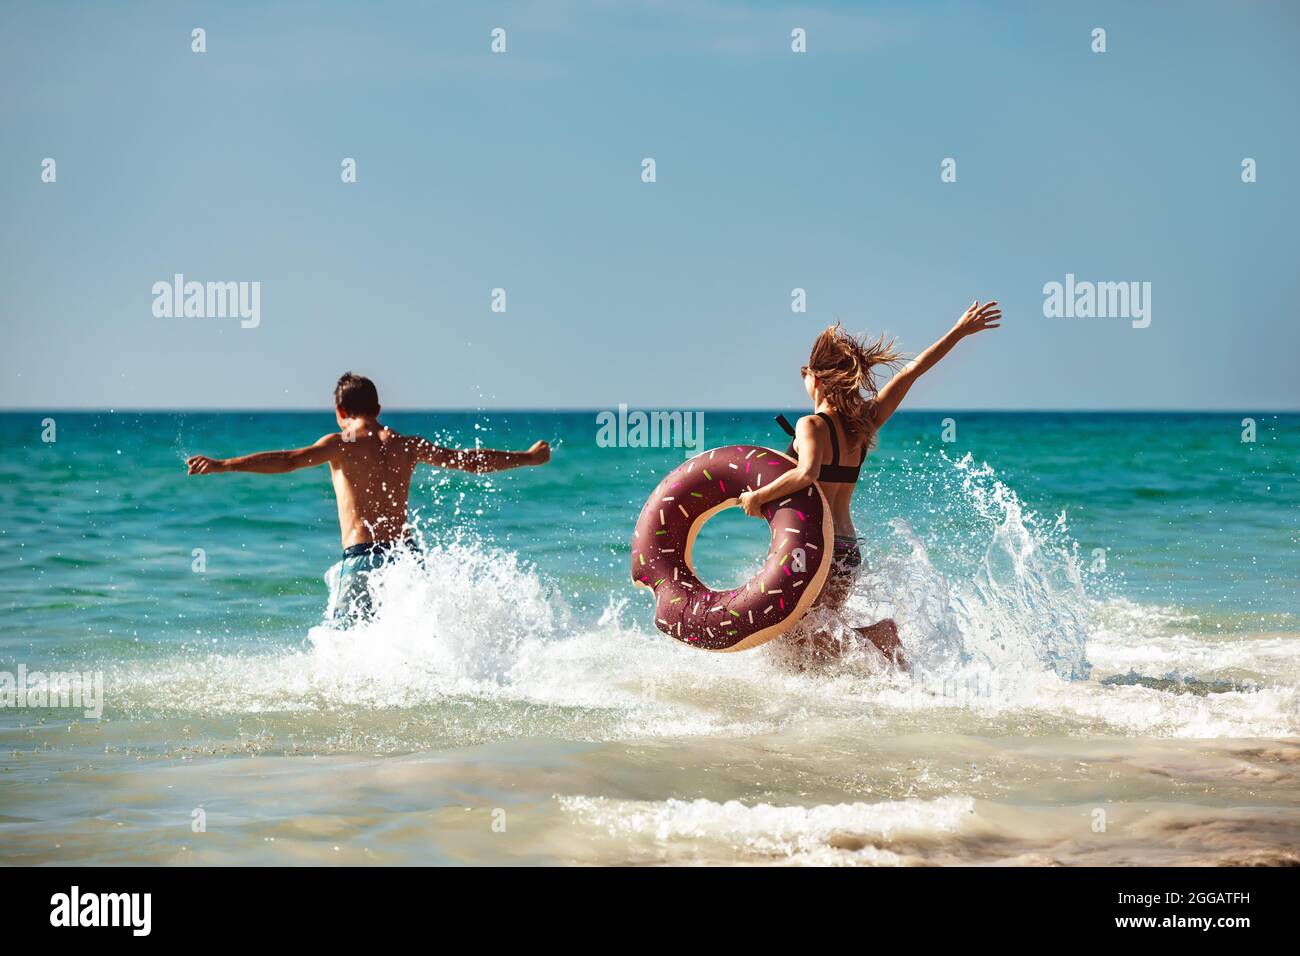 Un jeune couple heureux s'amuse avec un donut gonflable à la plage. Concept de vacances tropicales Banque D'Images